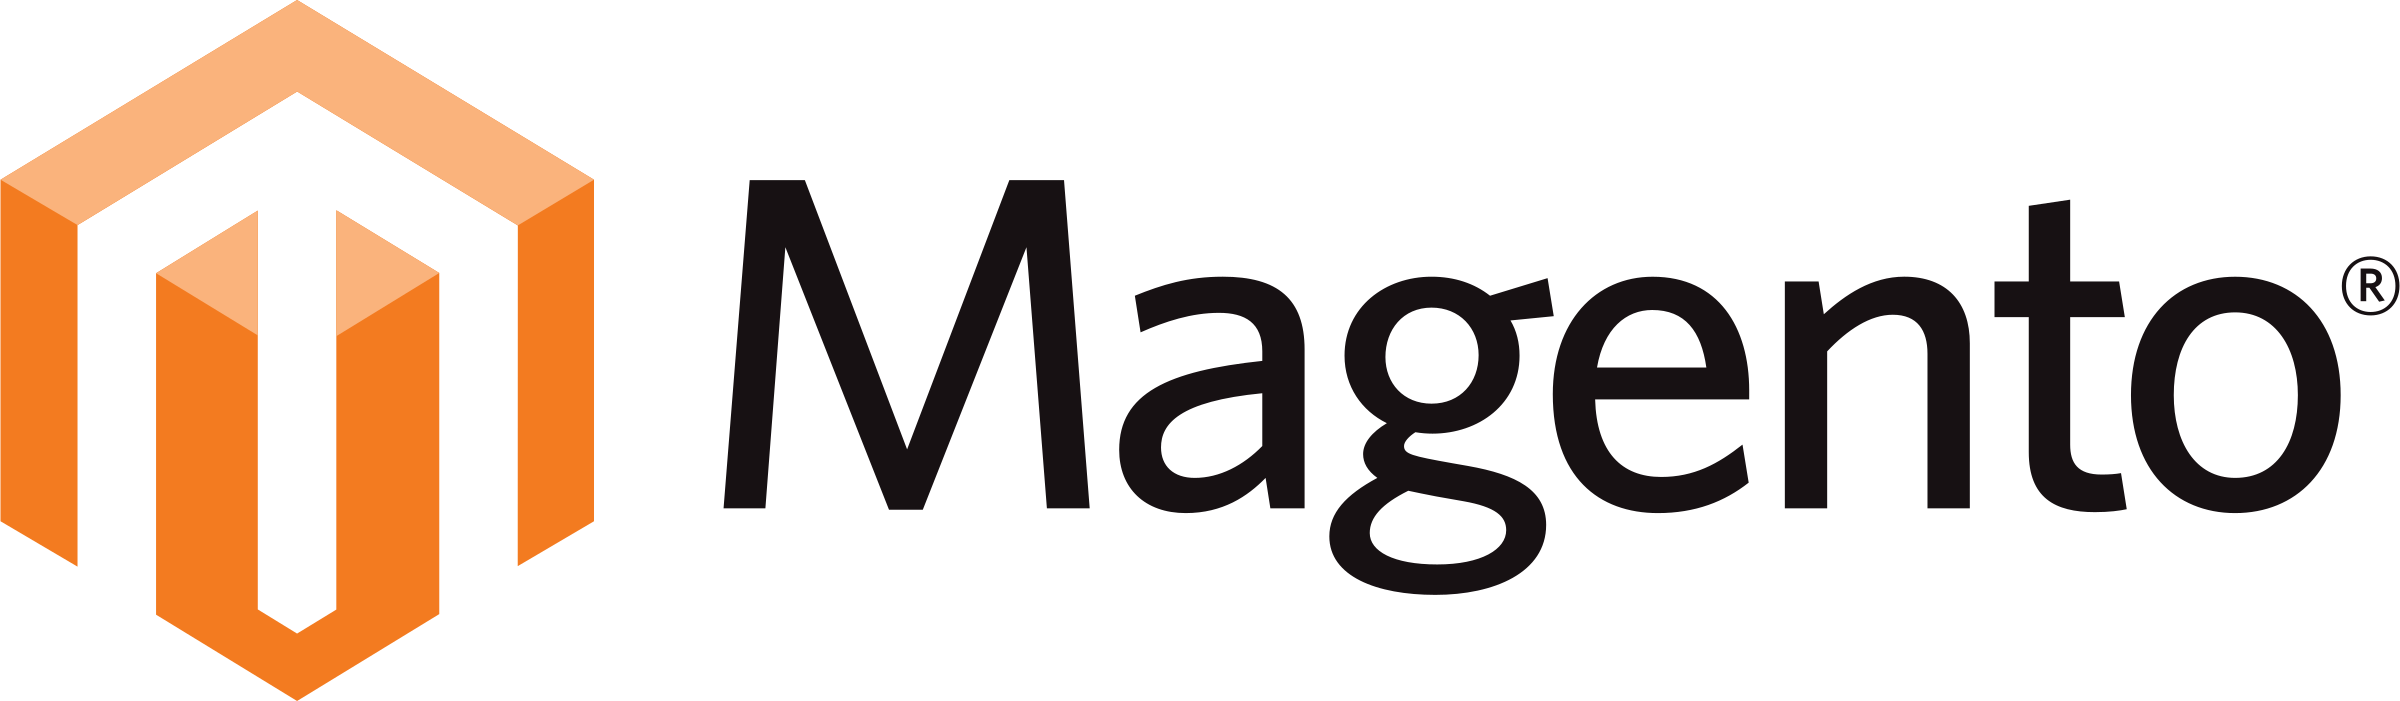 magento-1-logo-png-transparent.png